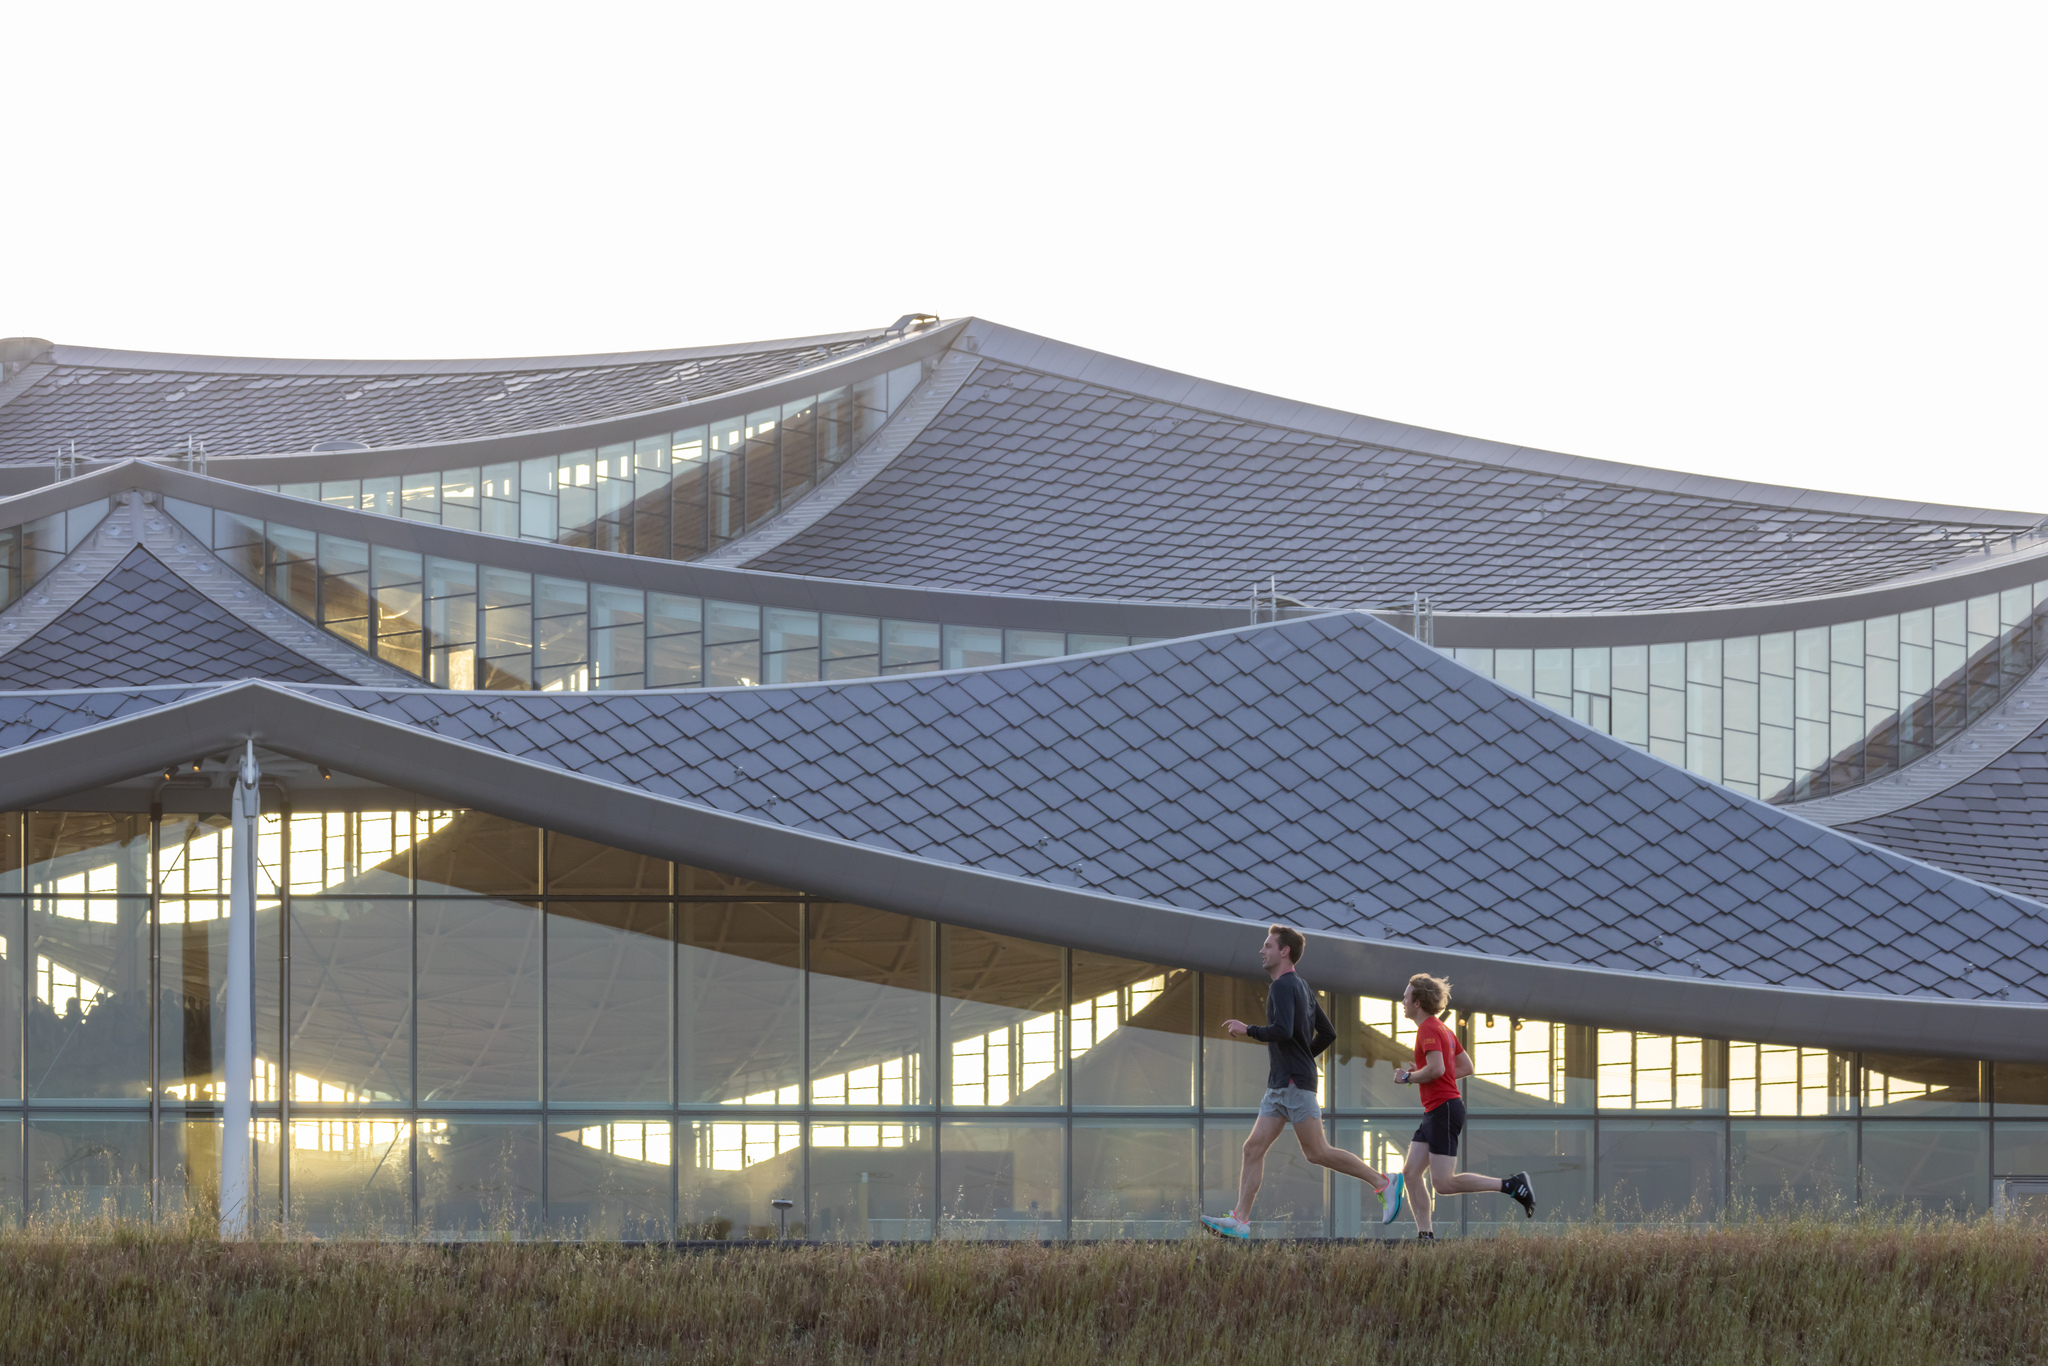 装设在屋顶上的龙鳞式太阳能电板，能供给园区 40% 的用电所需。